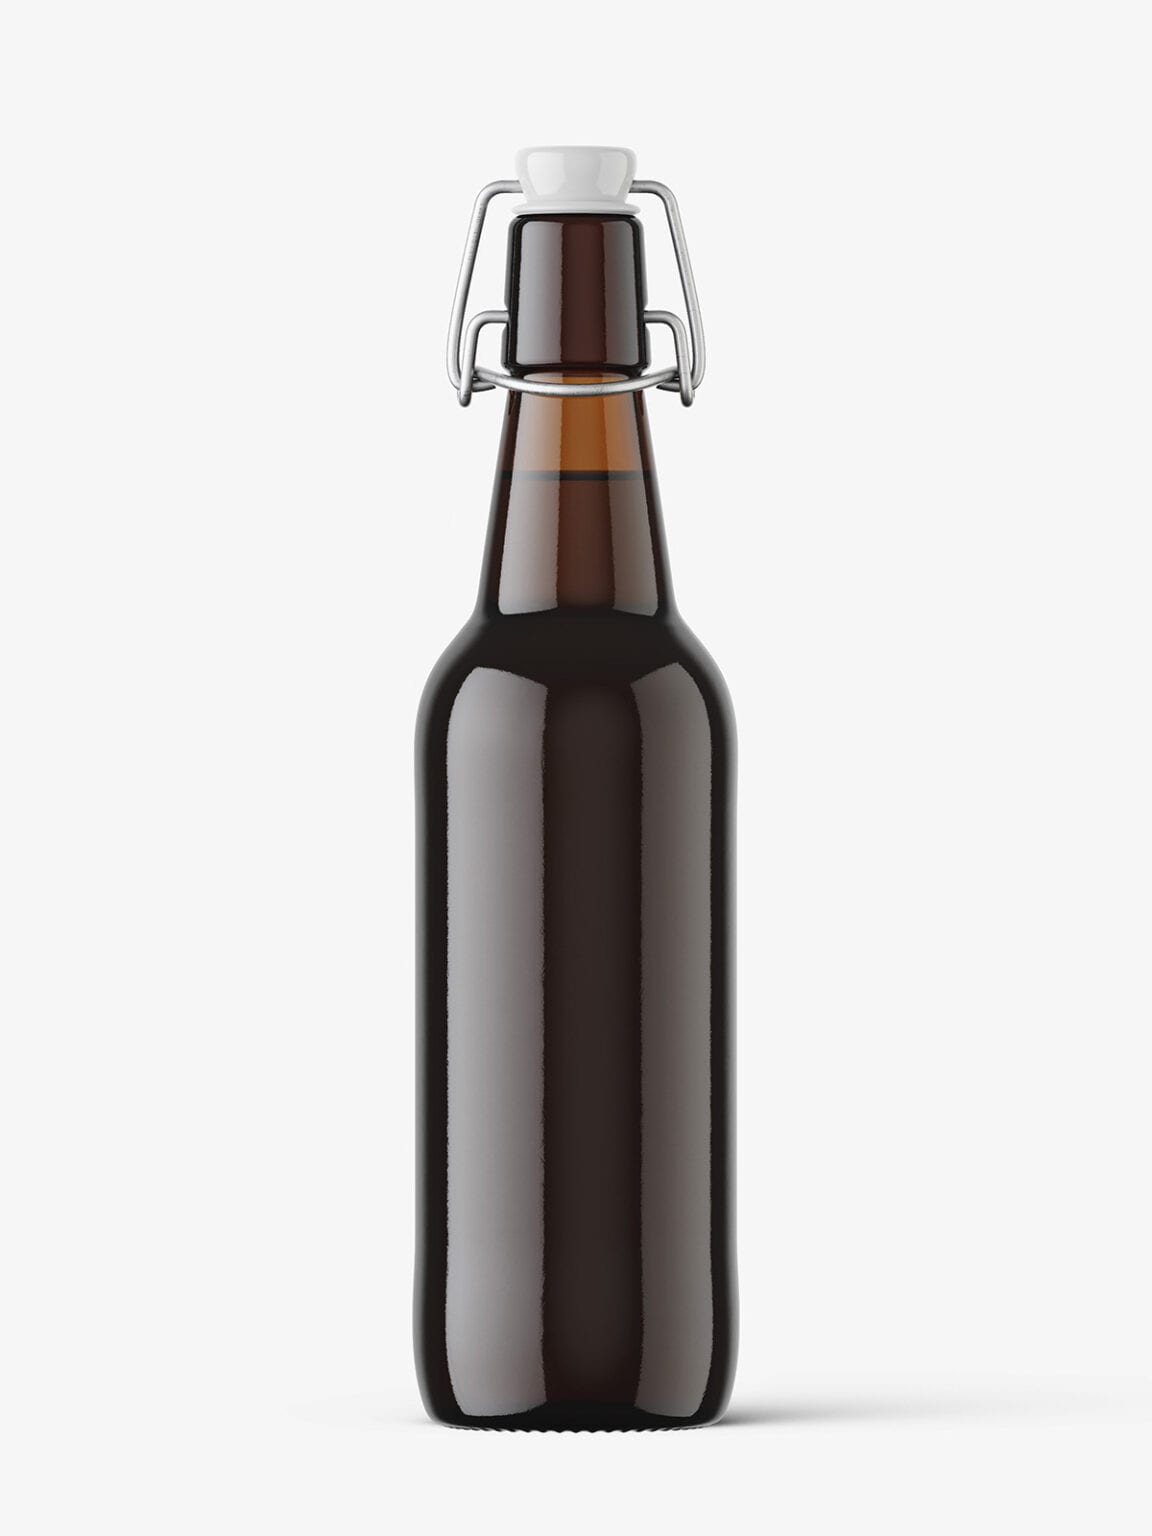 Download Dark beer bottle with swing top cap mockup - Smarty Mockups